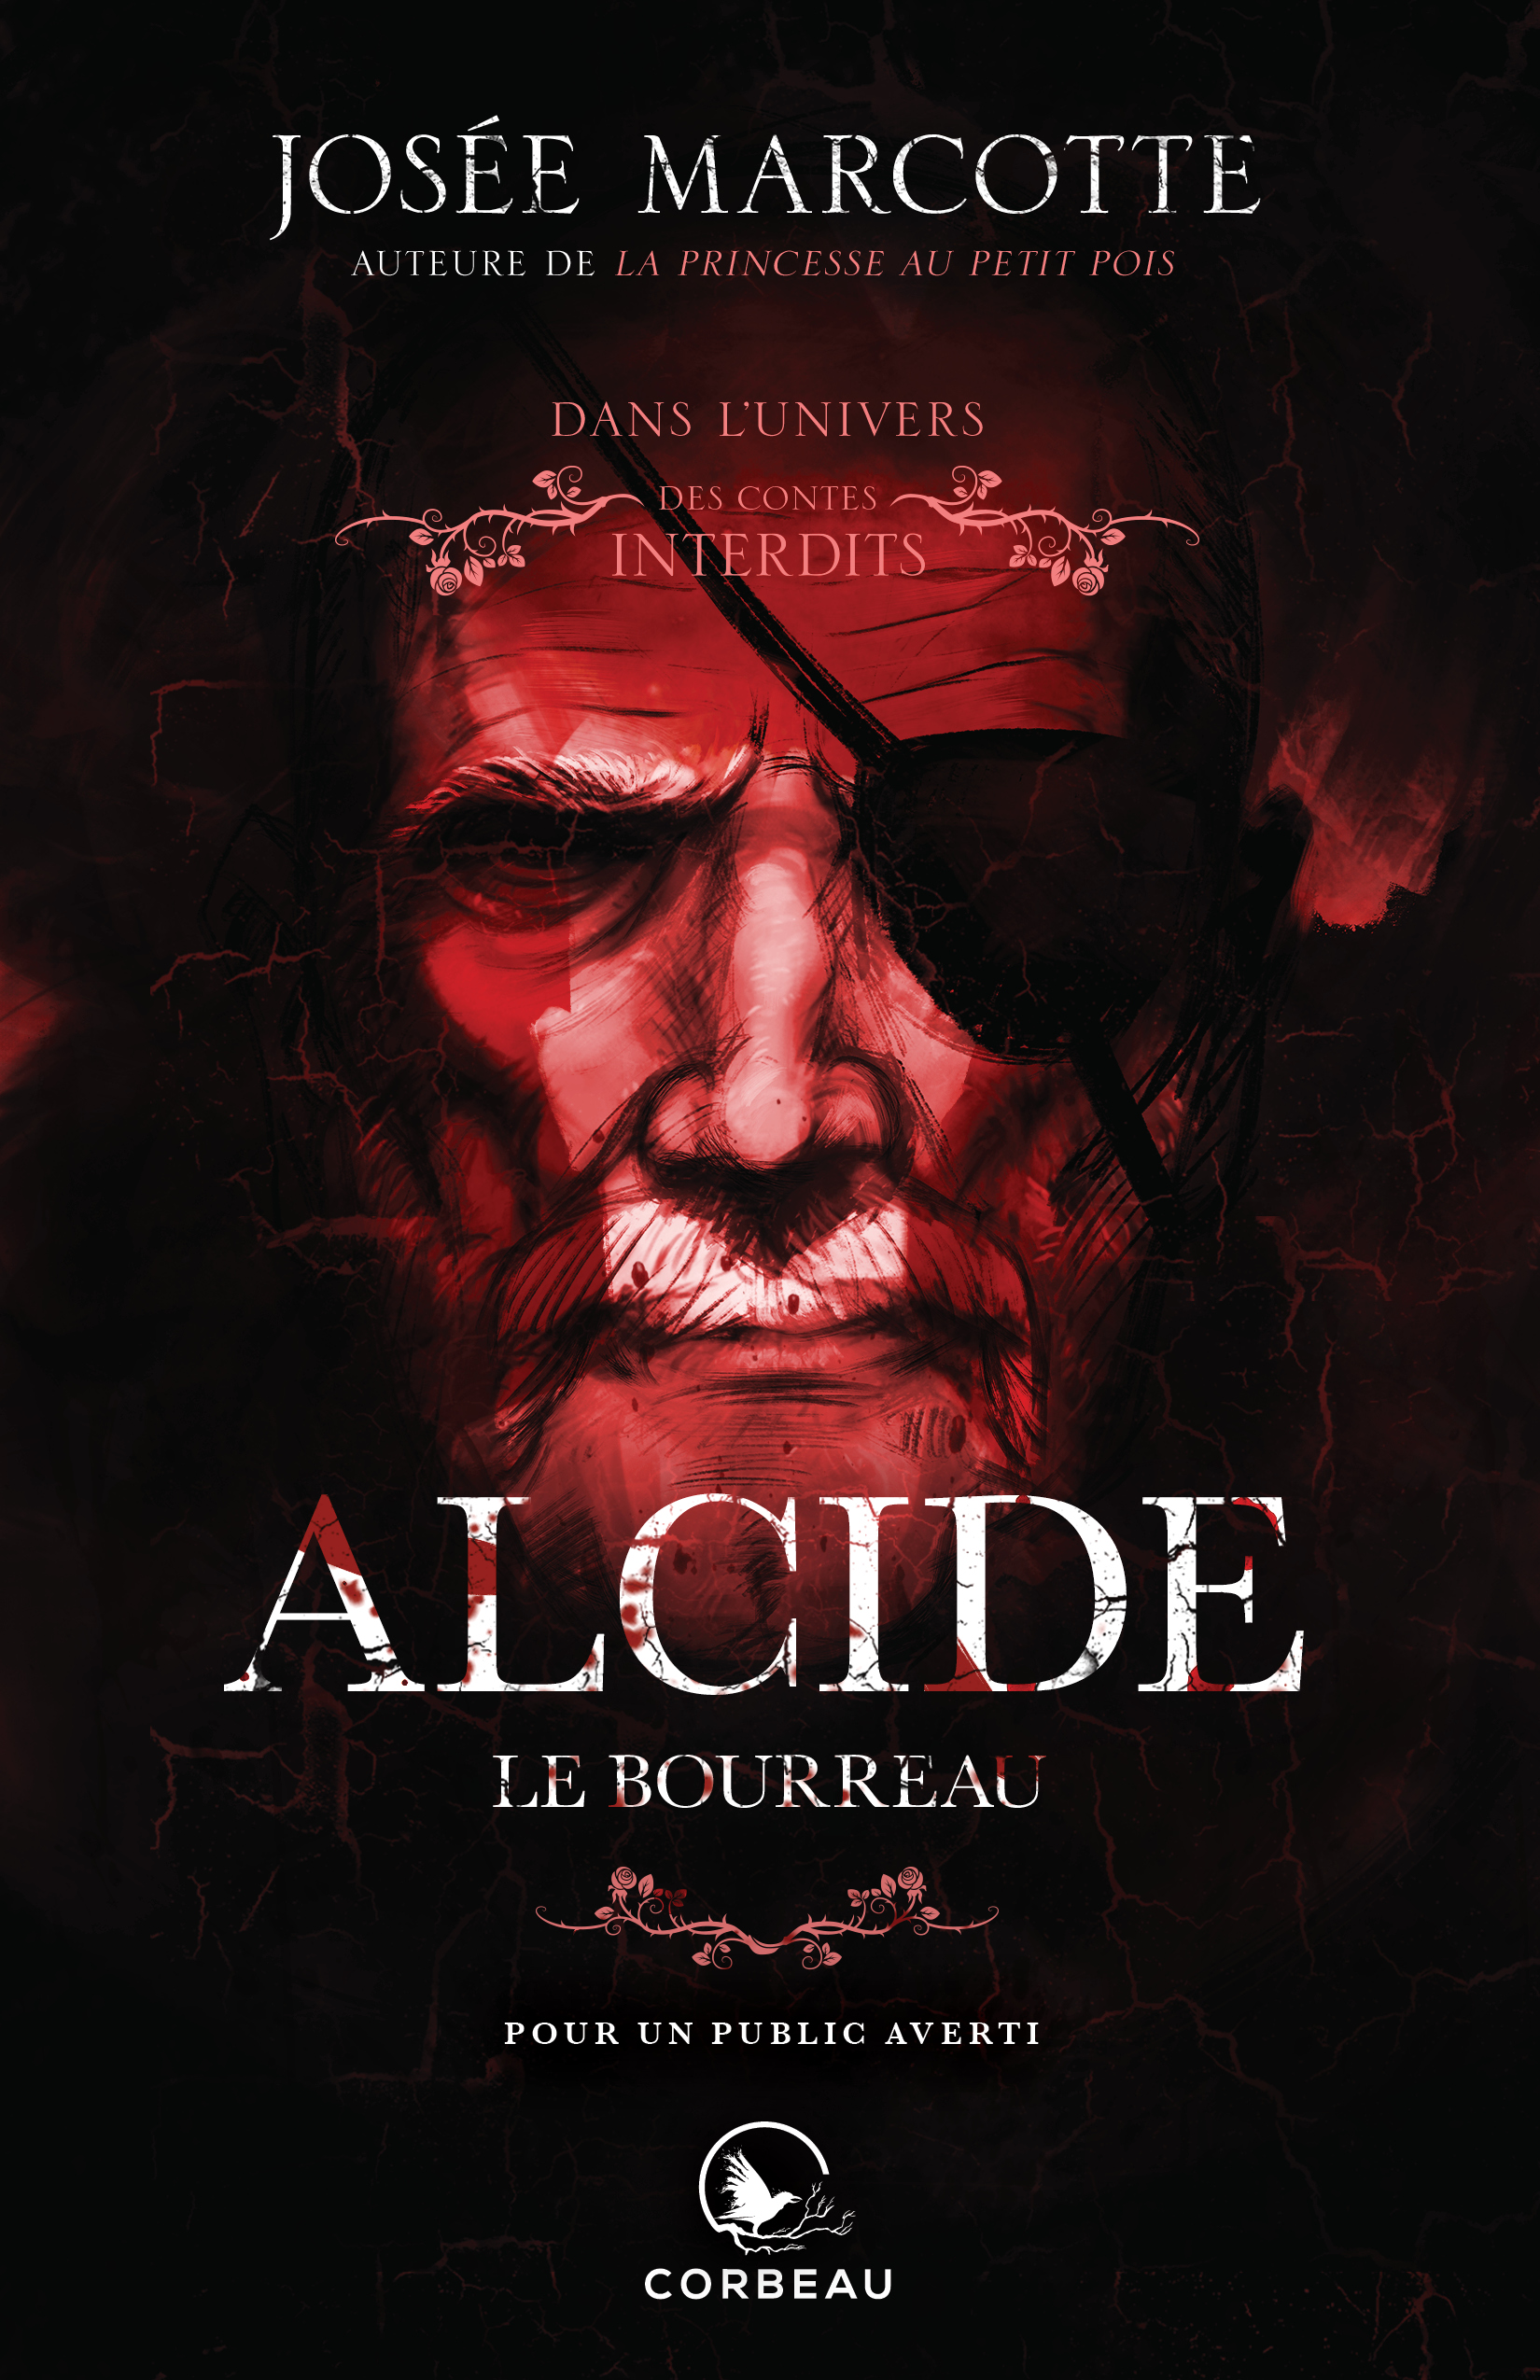 Alcide le Bourreau